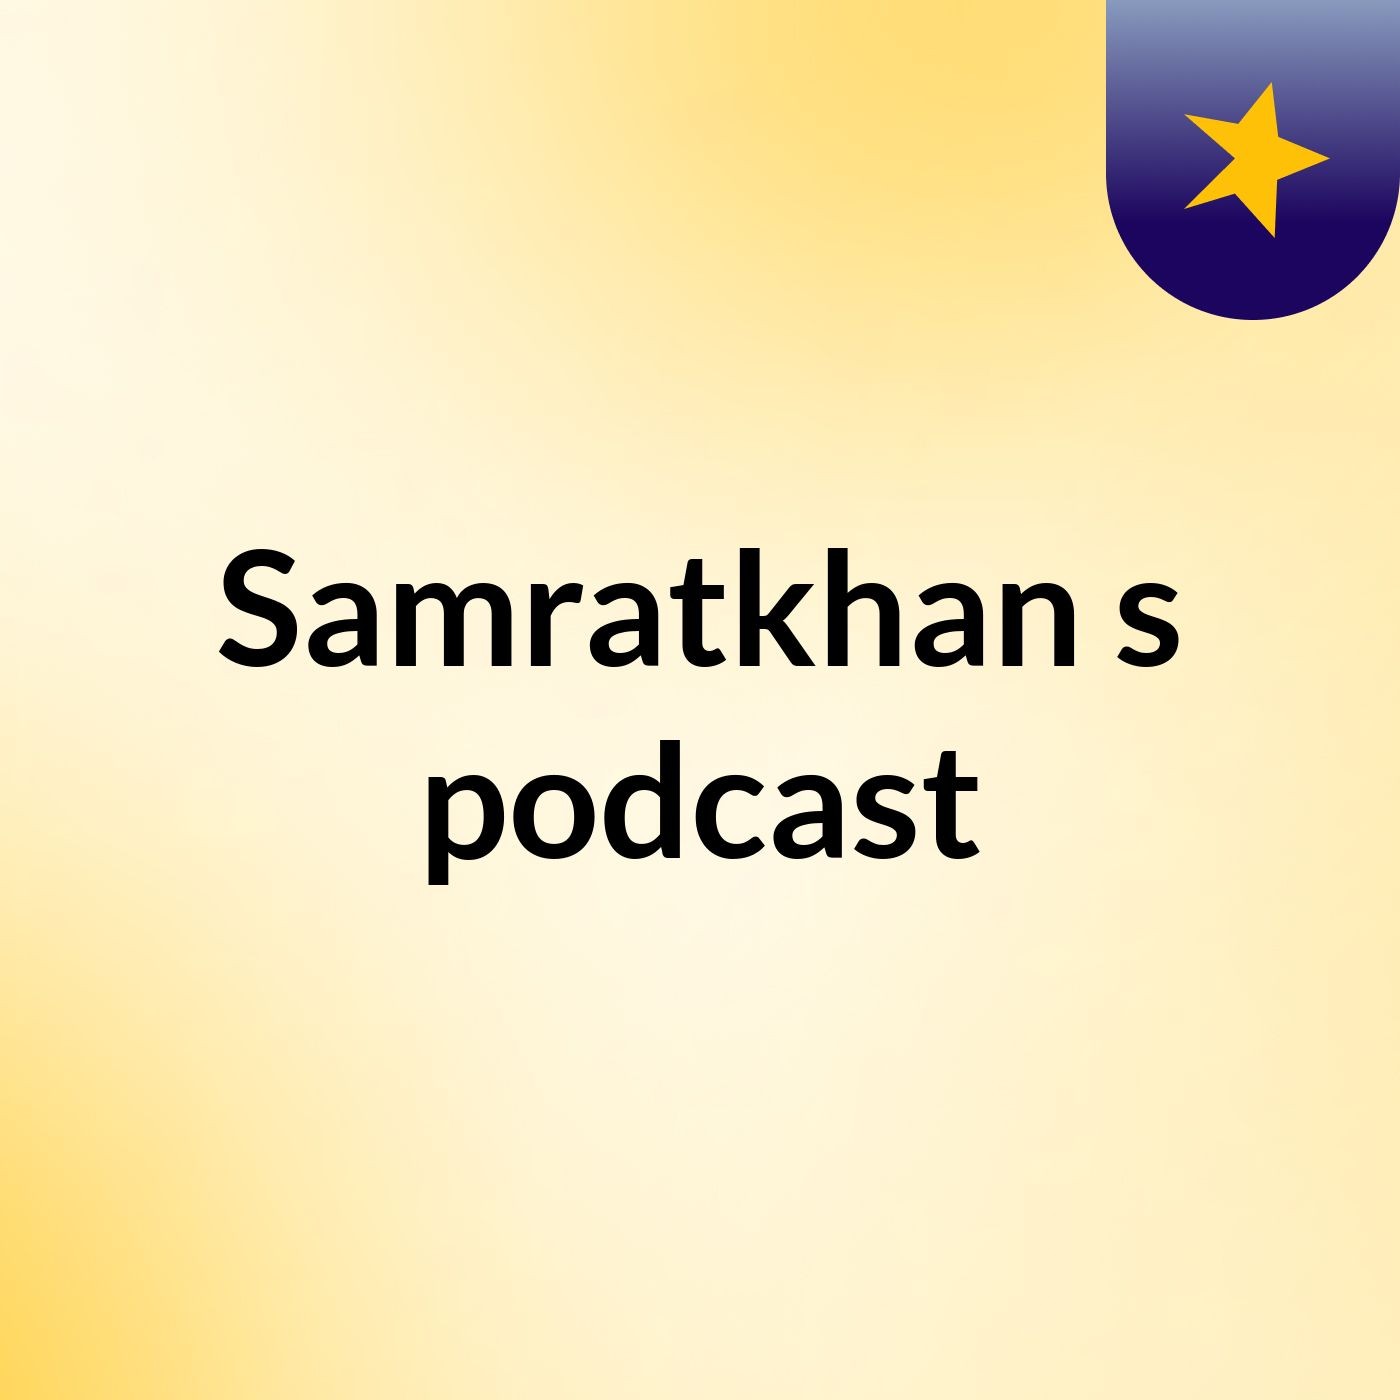 Samratkhan's podcast